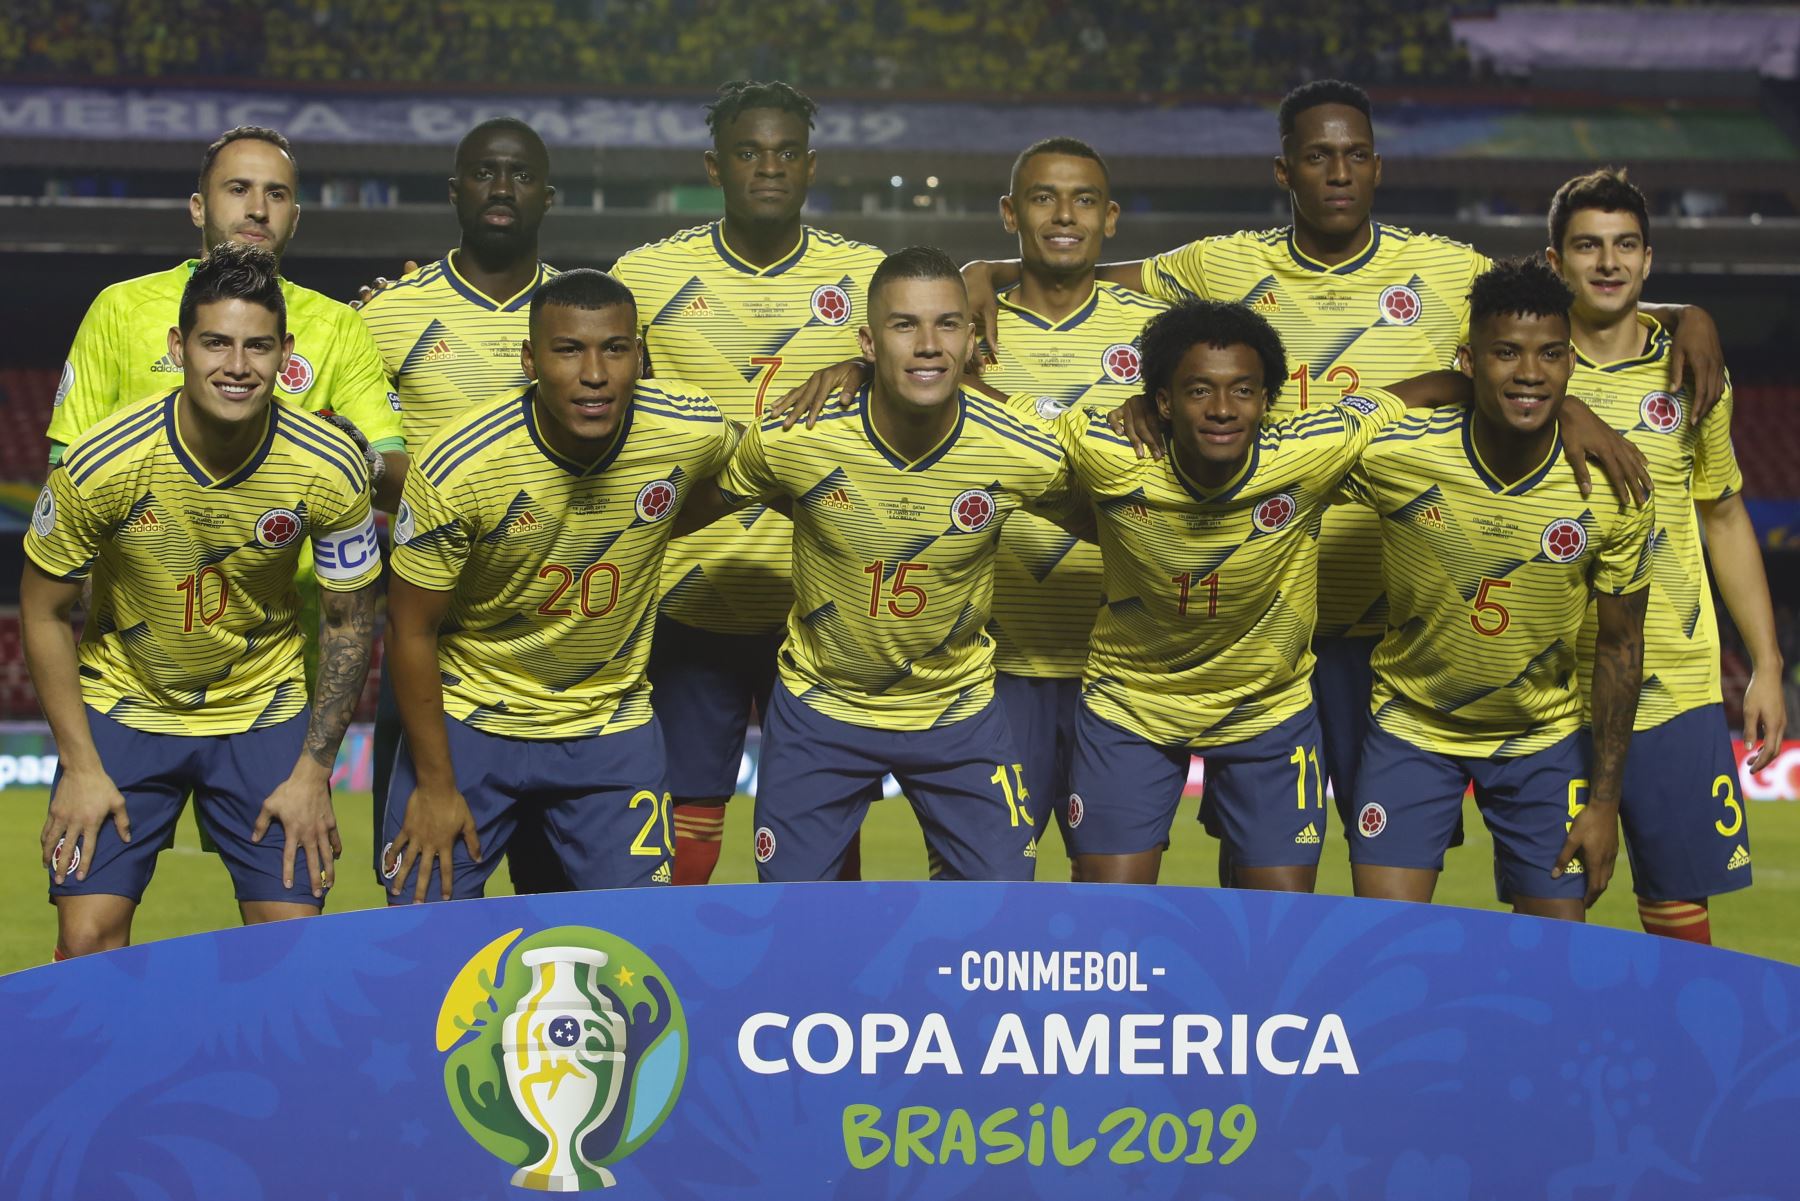 Los jugadores de Colombia posan para las fotos antes de su partido de torneo de fútbol de la Copa América contra Qatar  en Sao Paulo, Brasil.
Foto: AFP